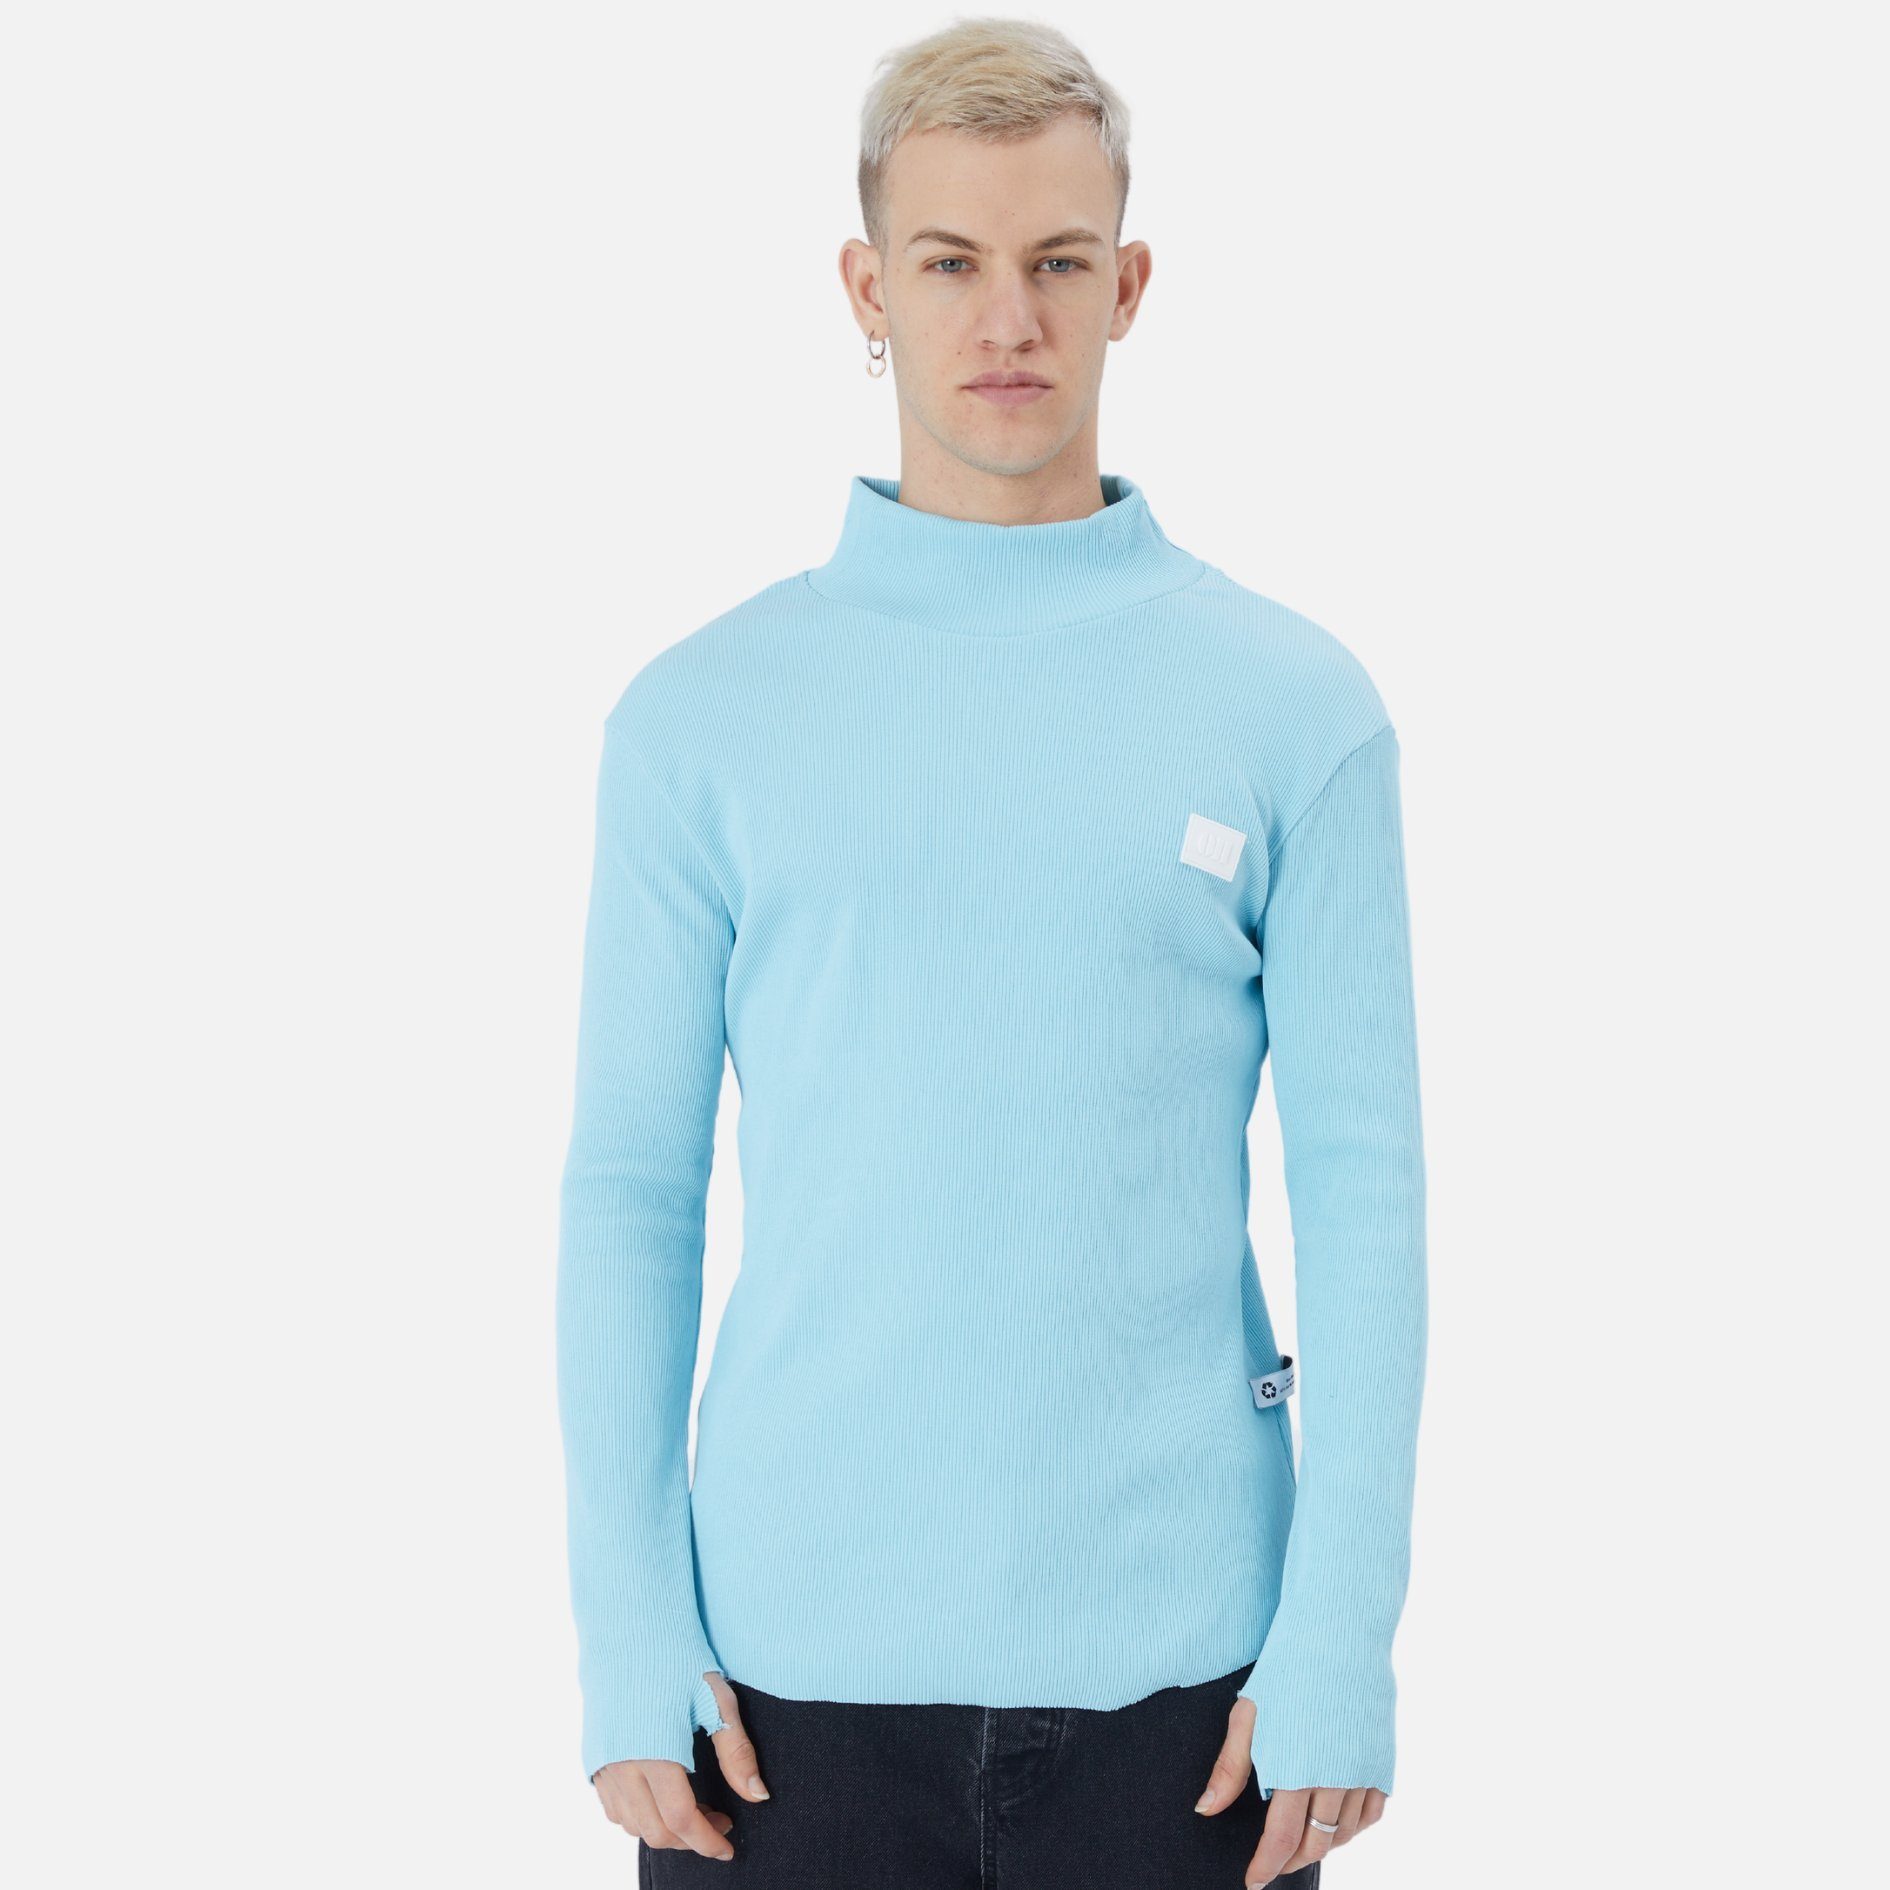 COFI Casuals Sweatshirt Herren Rundhals Sweatshirt Regular Fit Pullover Babyblau